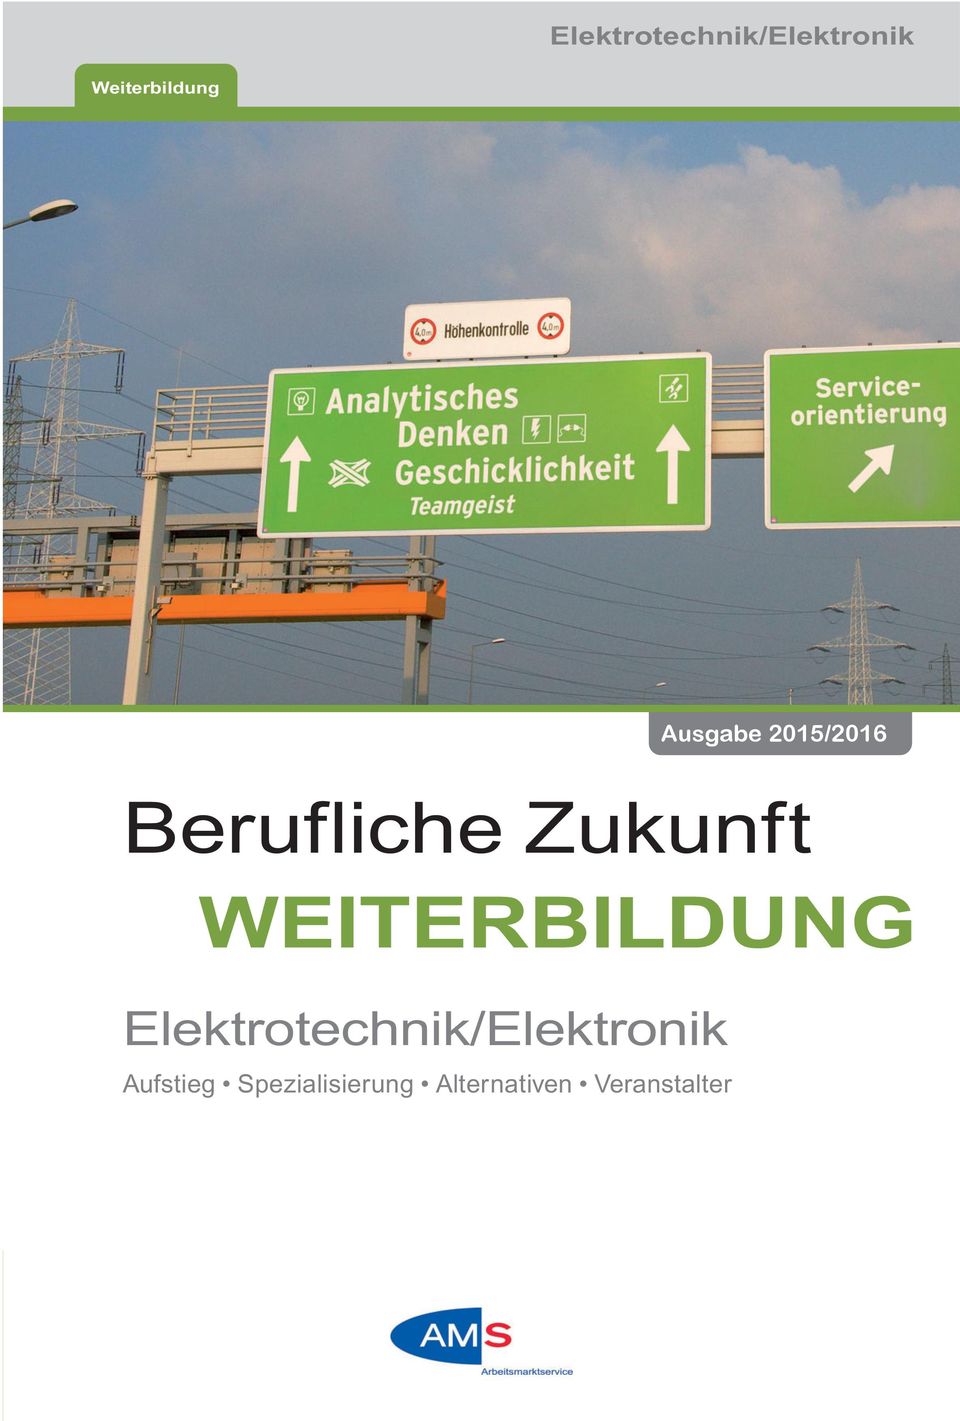 WEITERBILDUNG Elektrotechnik/Elektronik